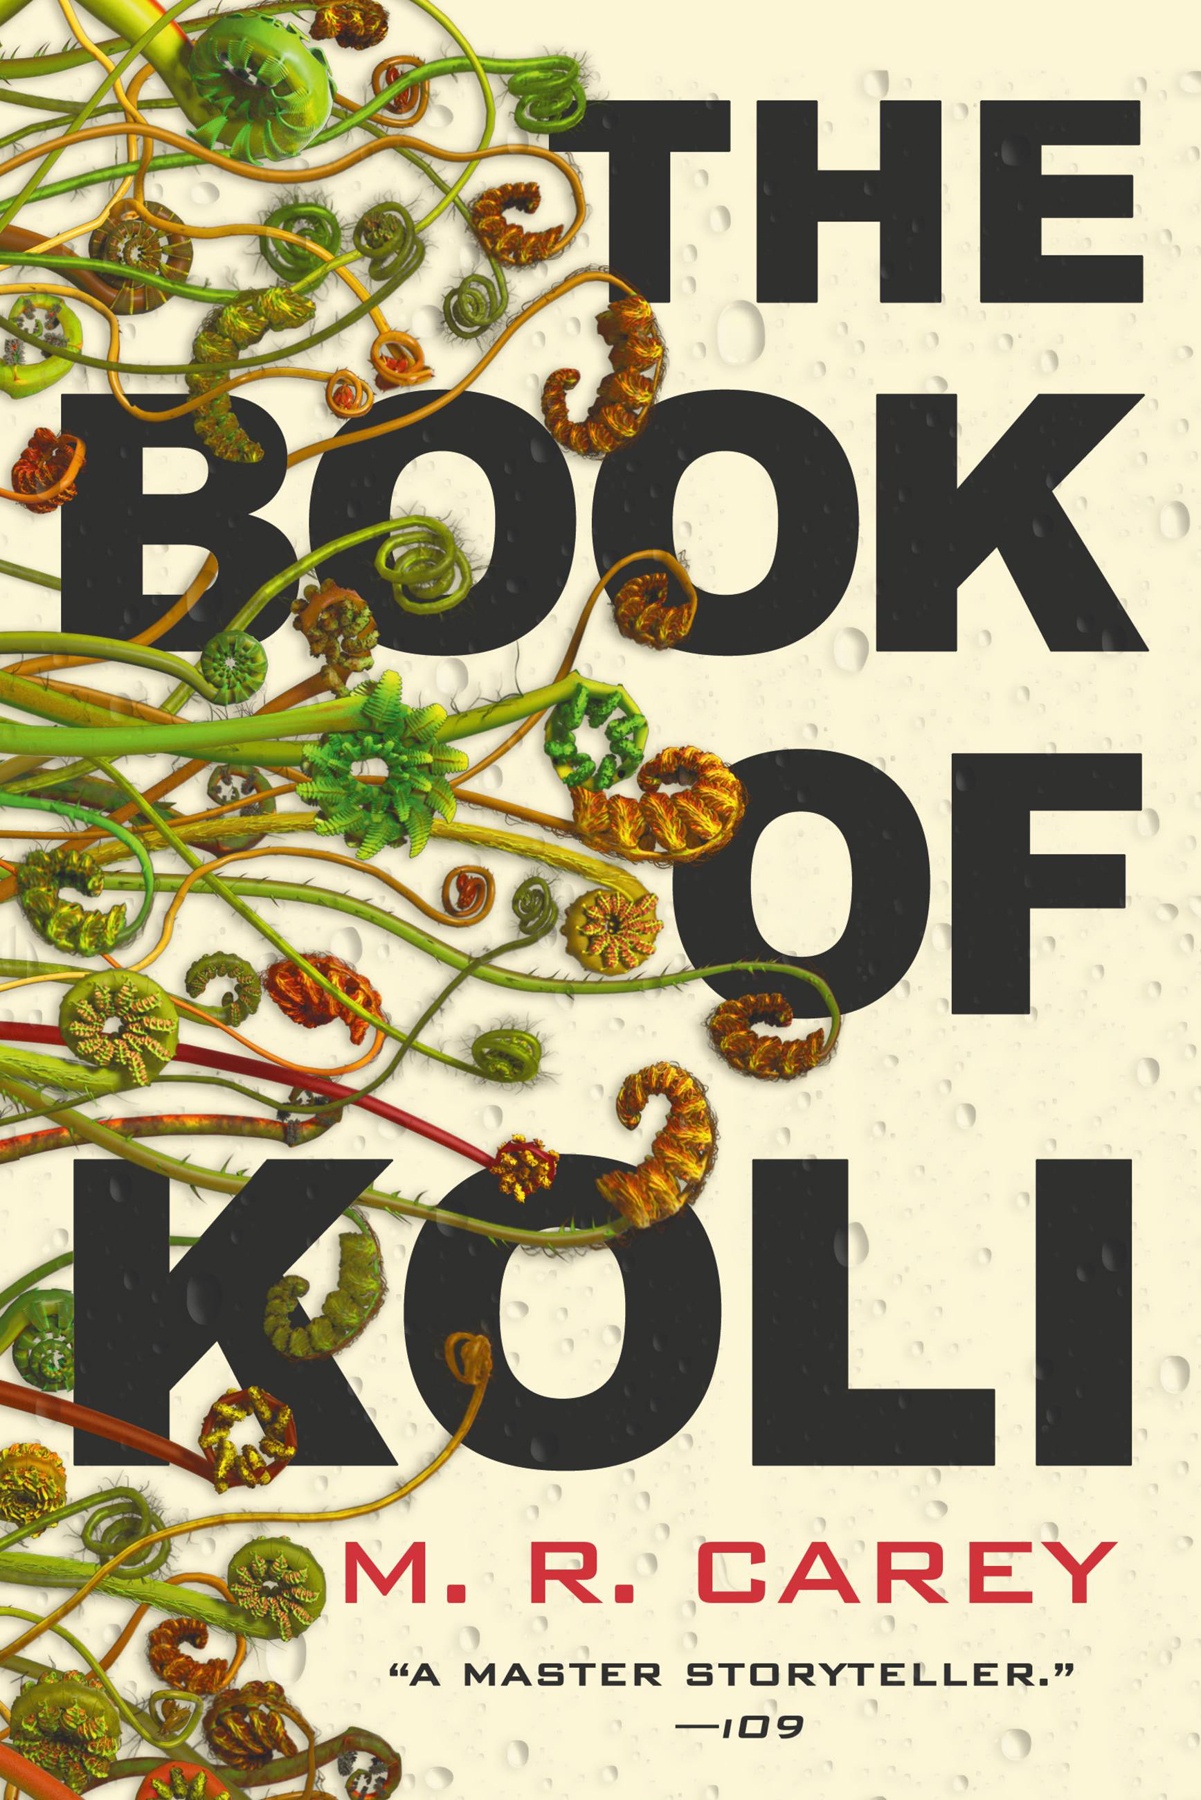 M. R. Carey: Book of Koli (2020, Orbit)